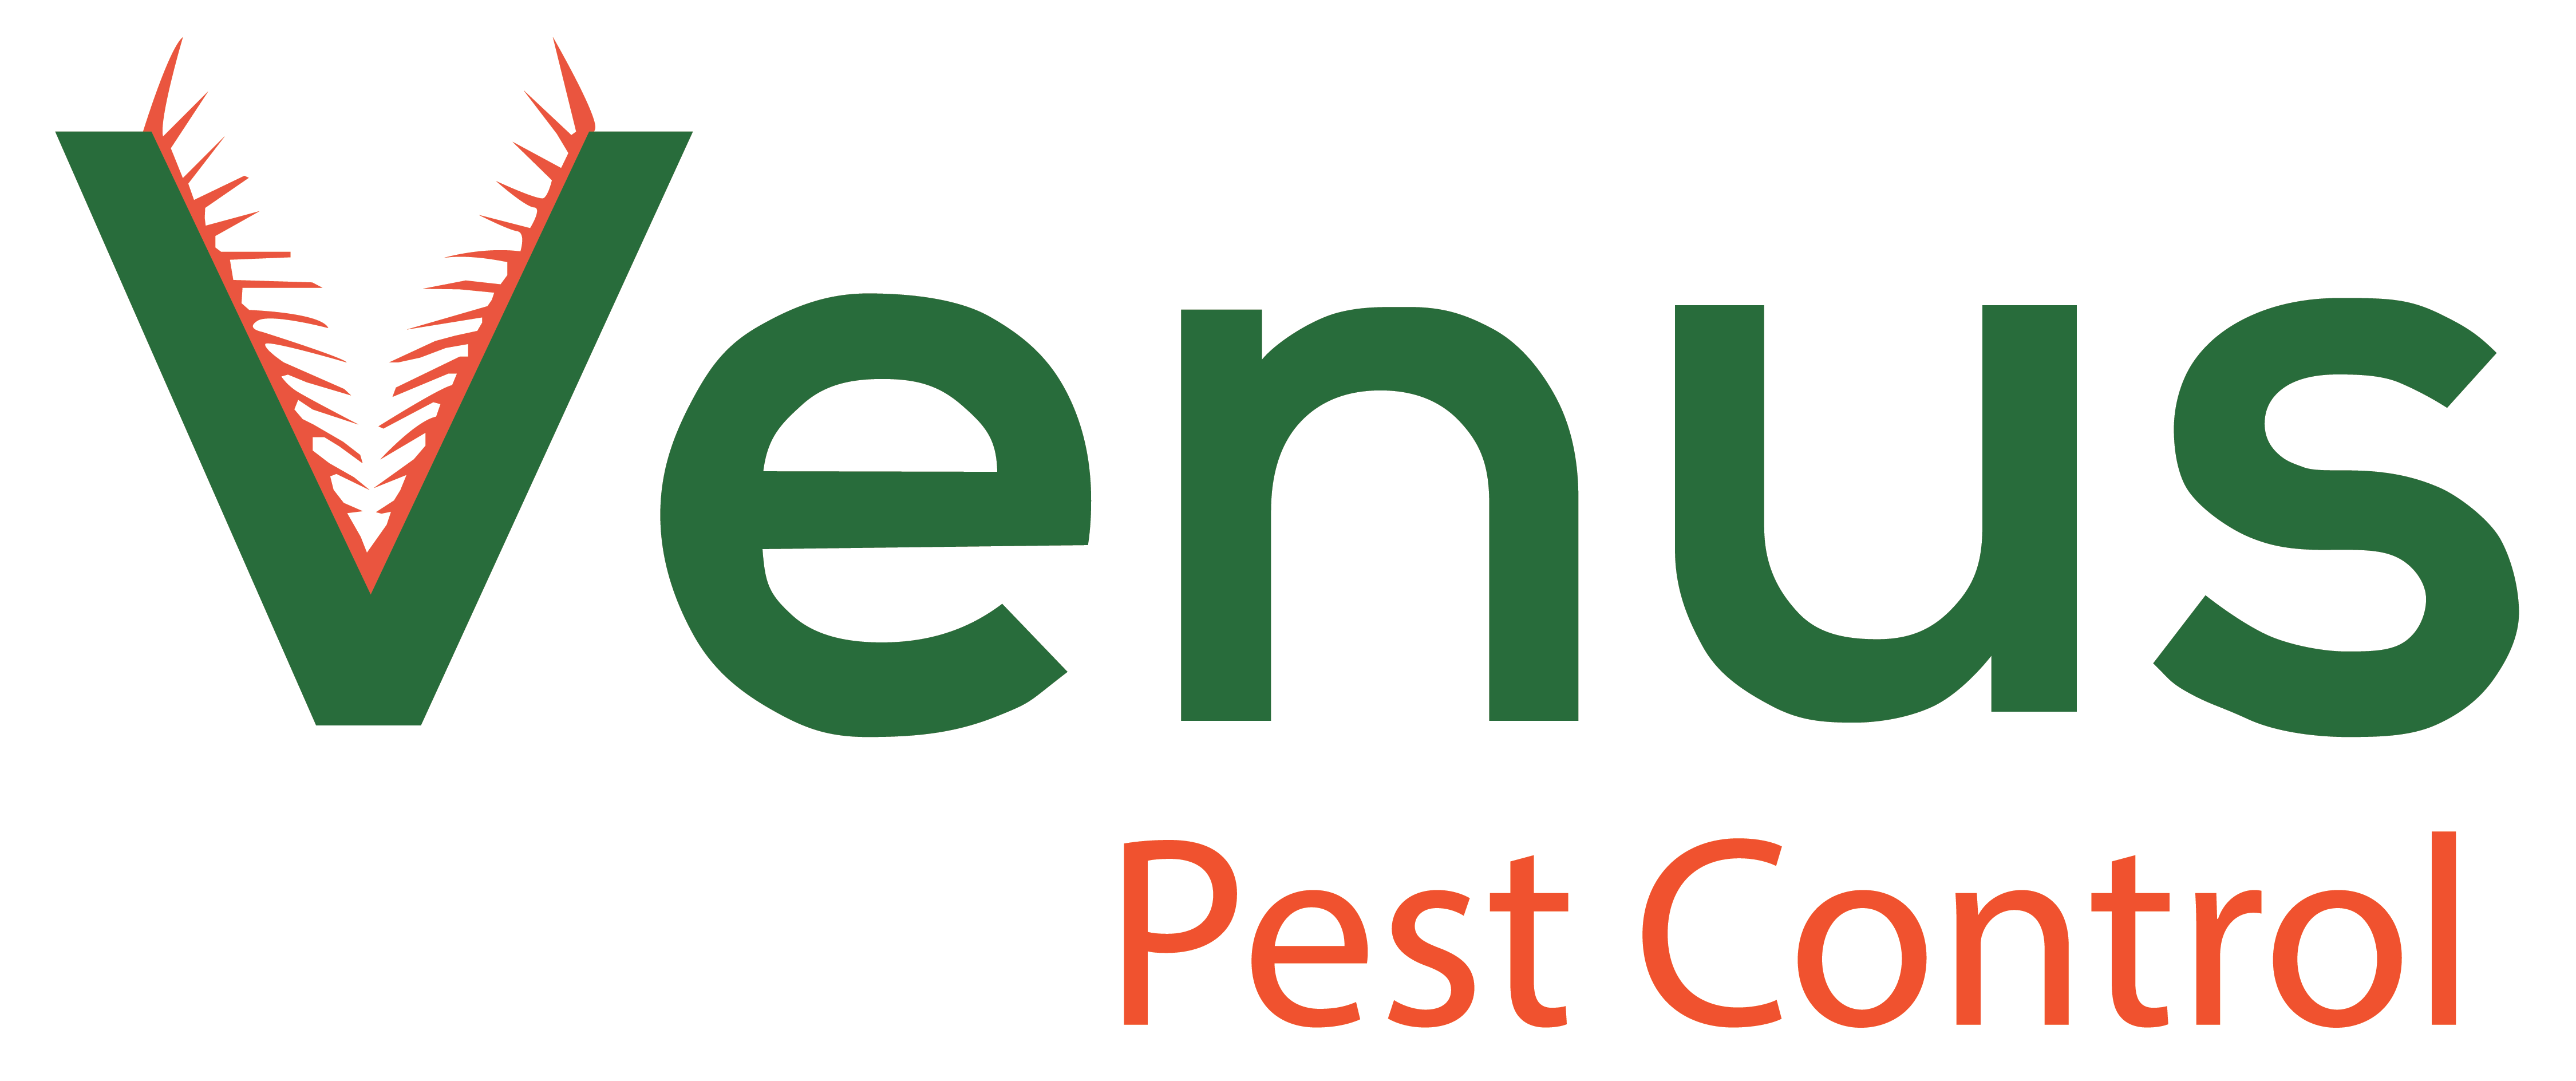 LabelSDS - our clients - Venus Pest Control 